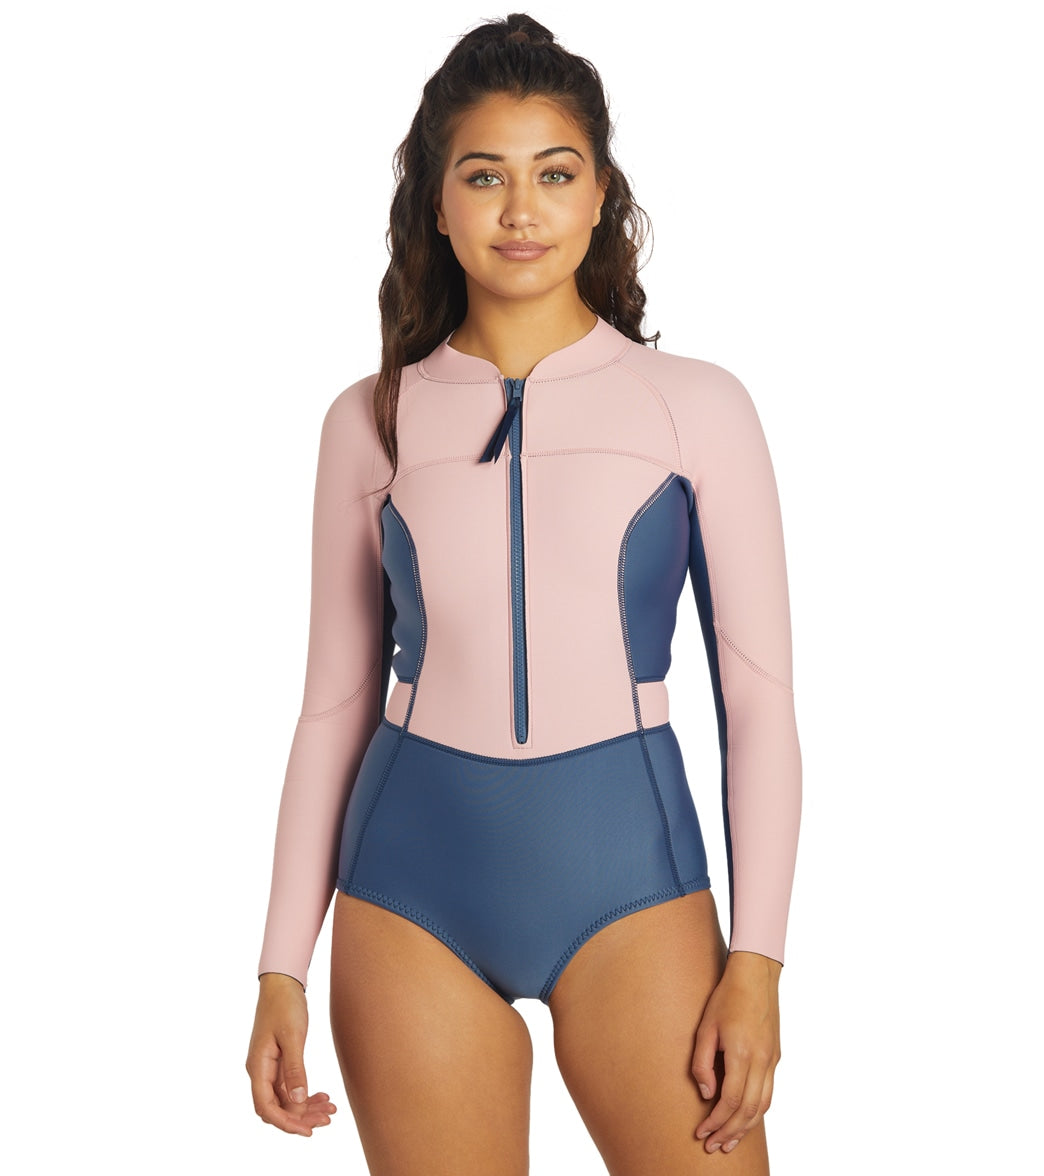 Shop Reversible Wetsuit For Women – Vivida Lifestyle, 55% OFF